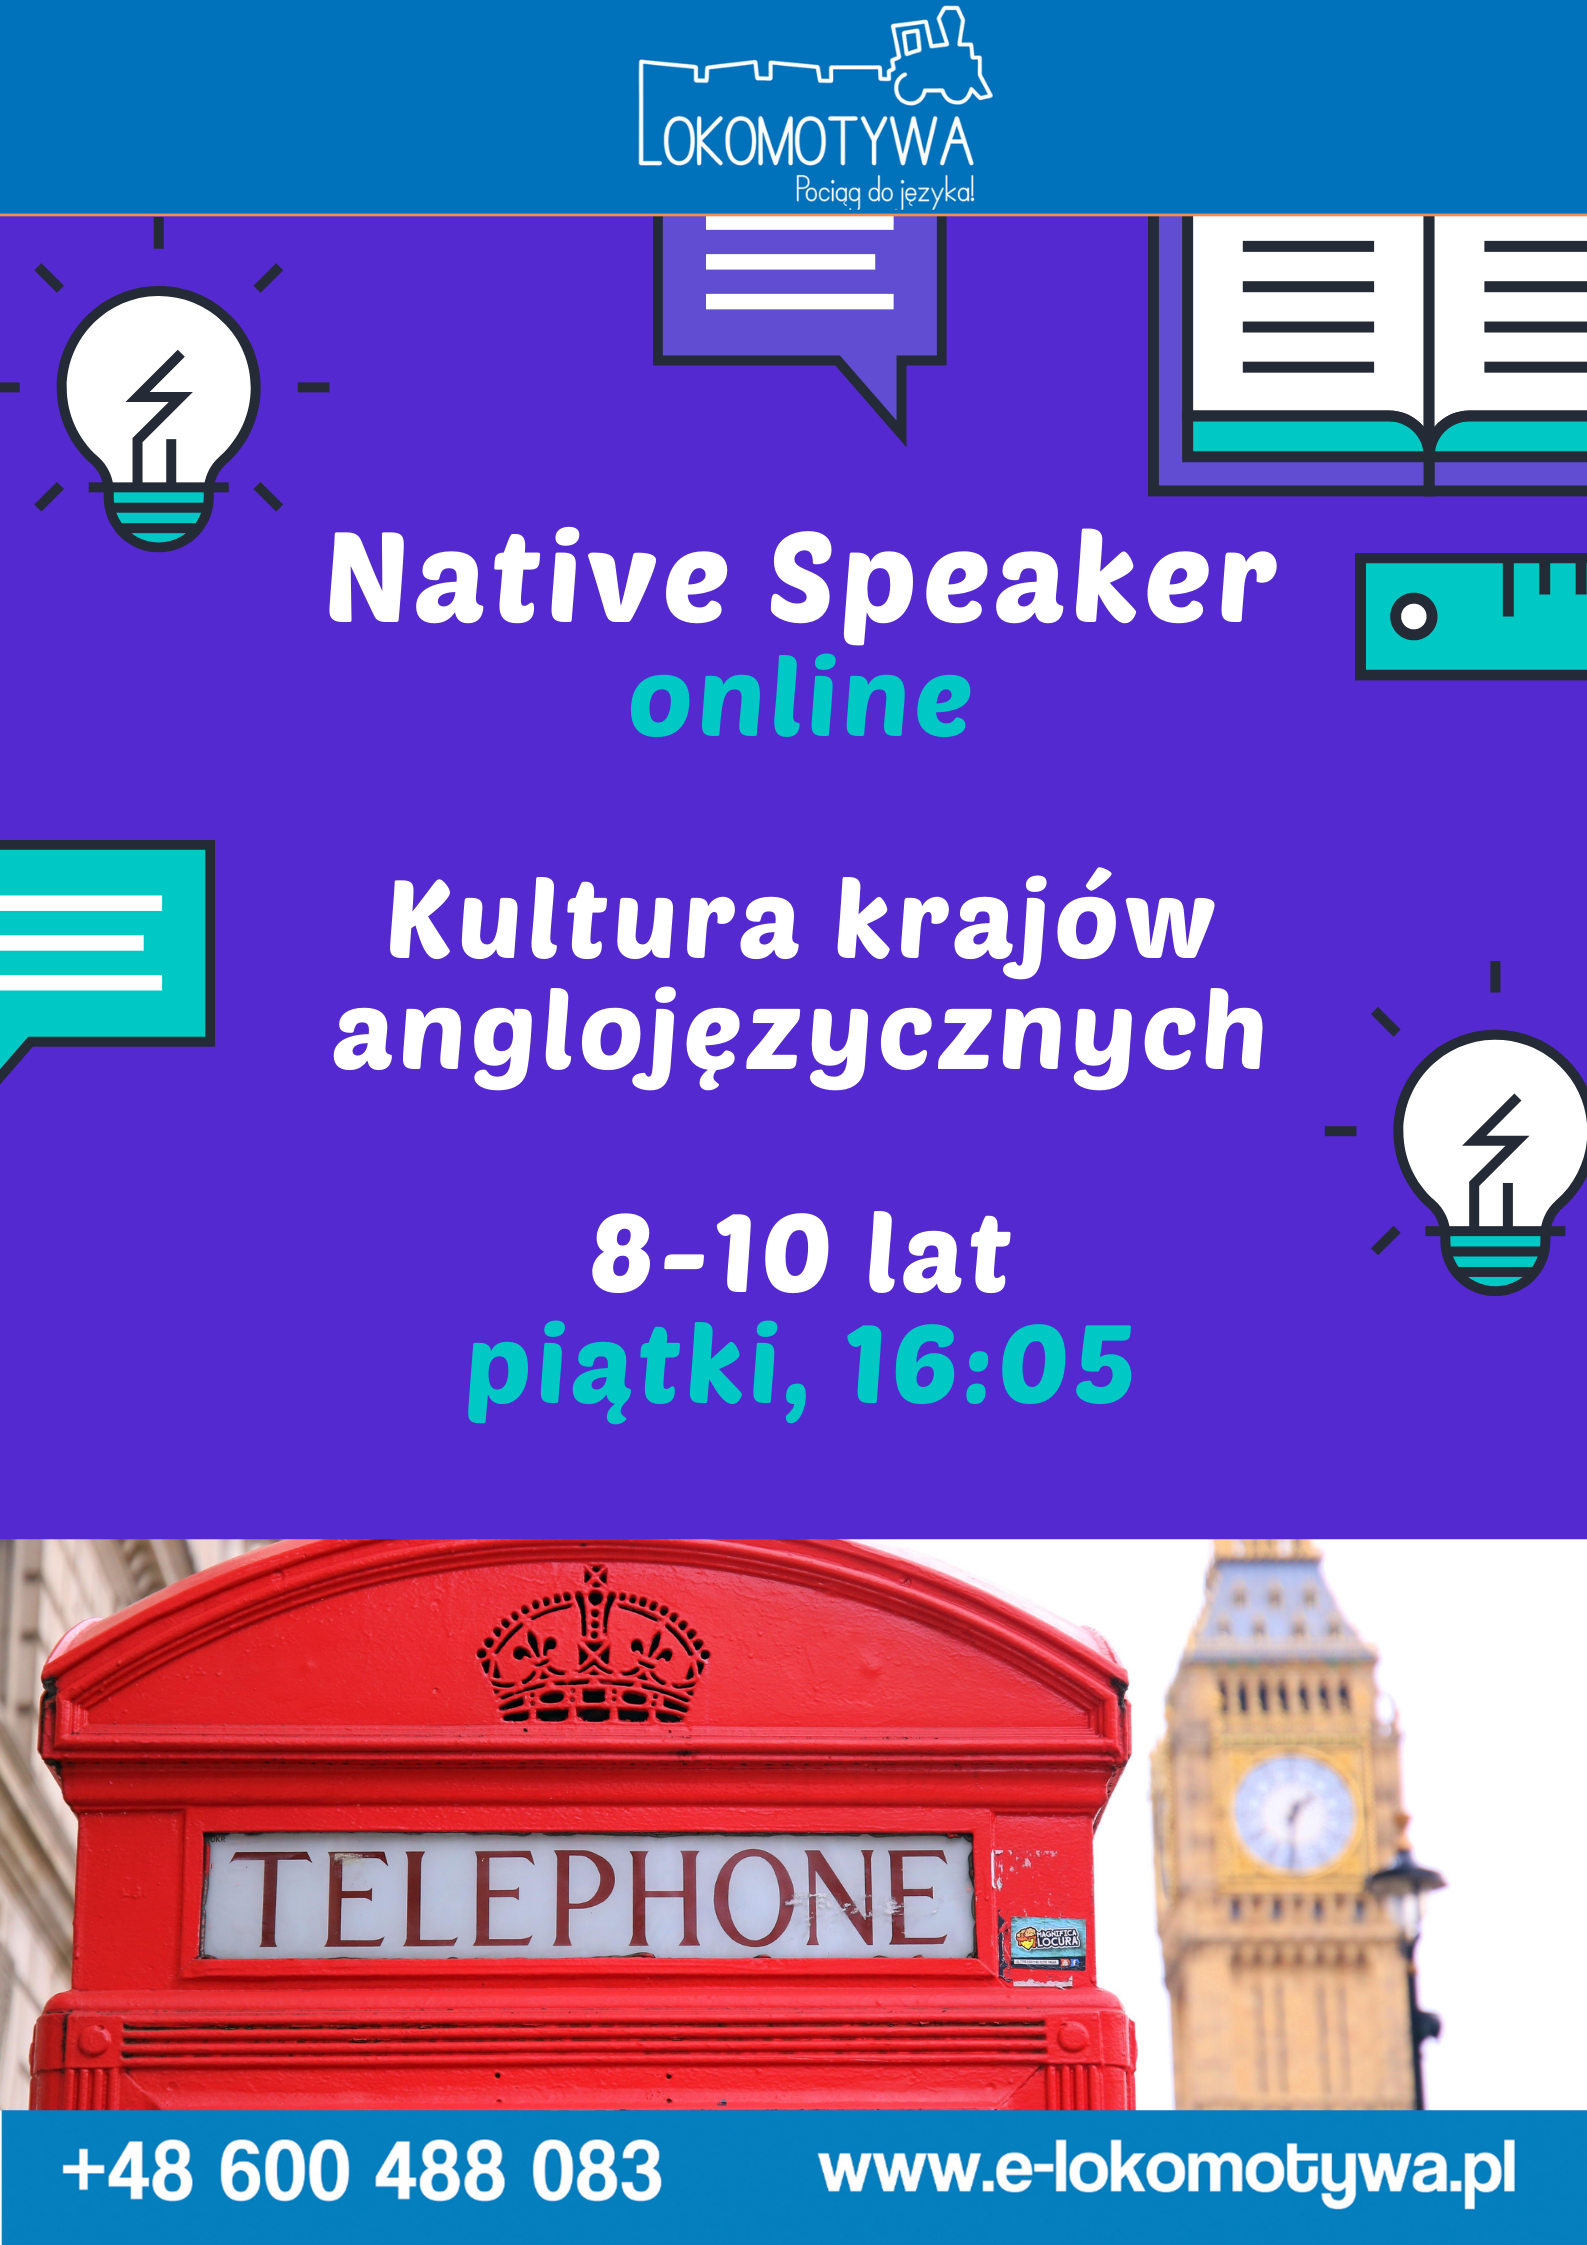 Poznaj kulturę krajów anglojęzycznych z Native Speakerem